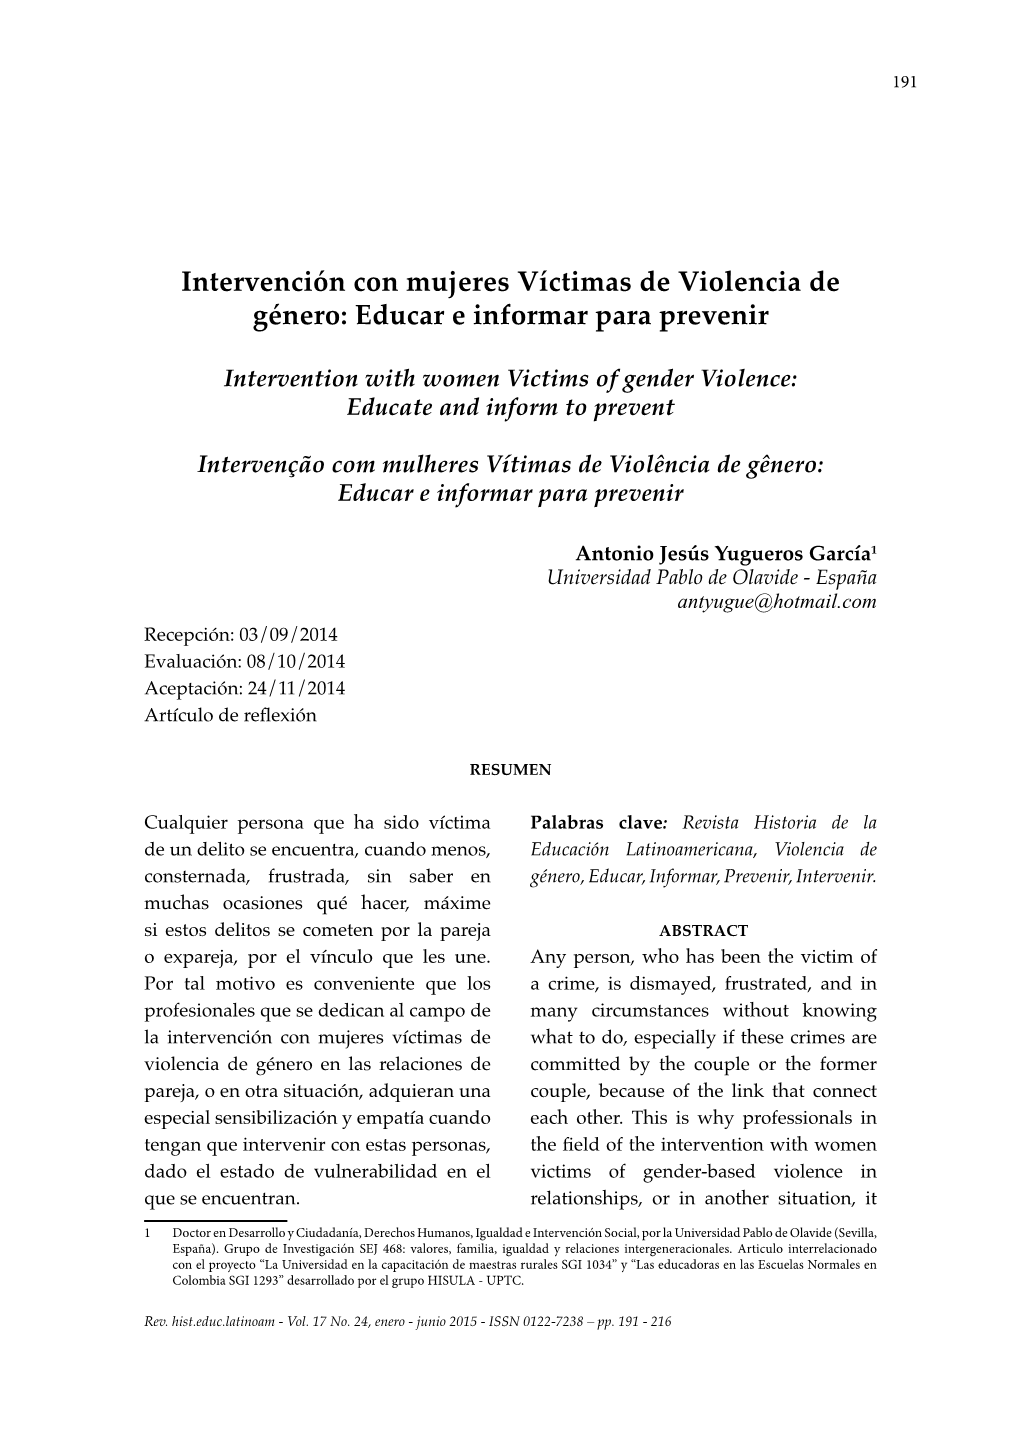 Intervención Con Mujeres Víctimas De Violencia De Género: Educar E Informar Para Prevenir